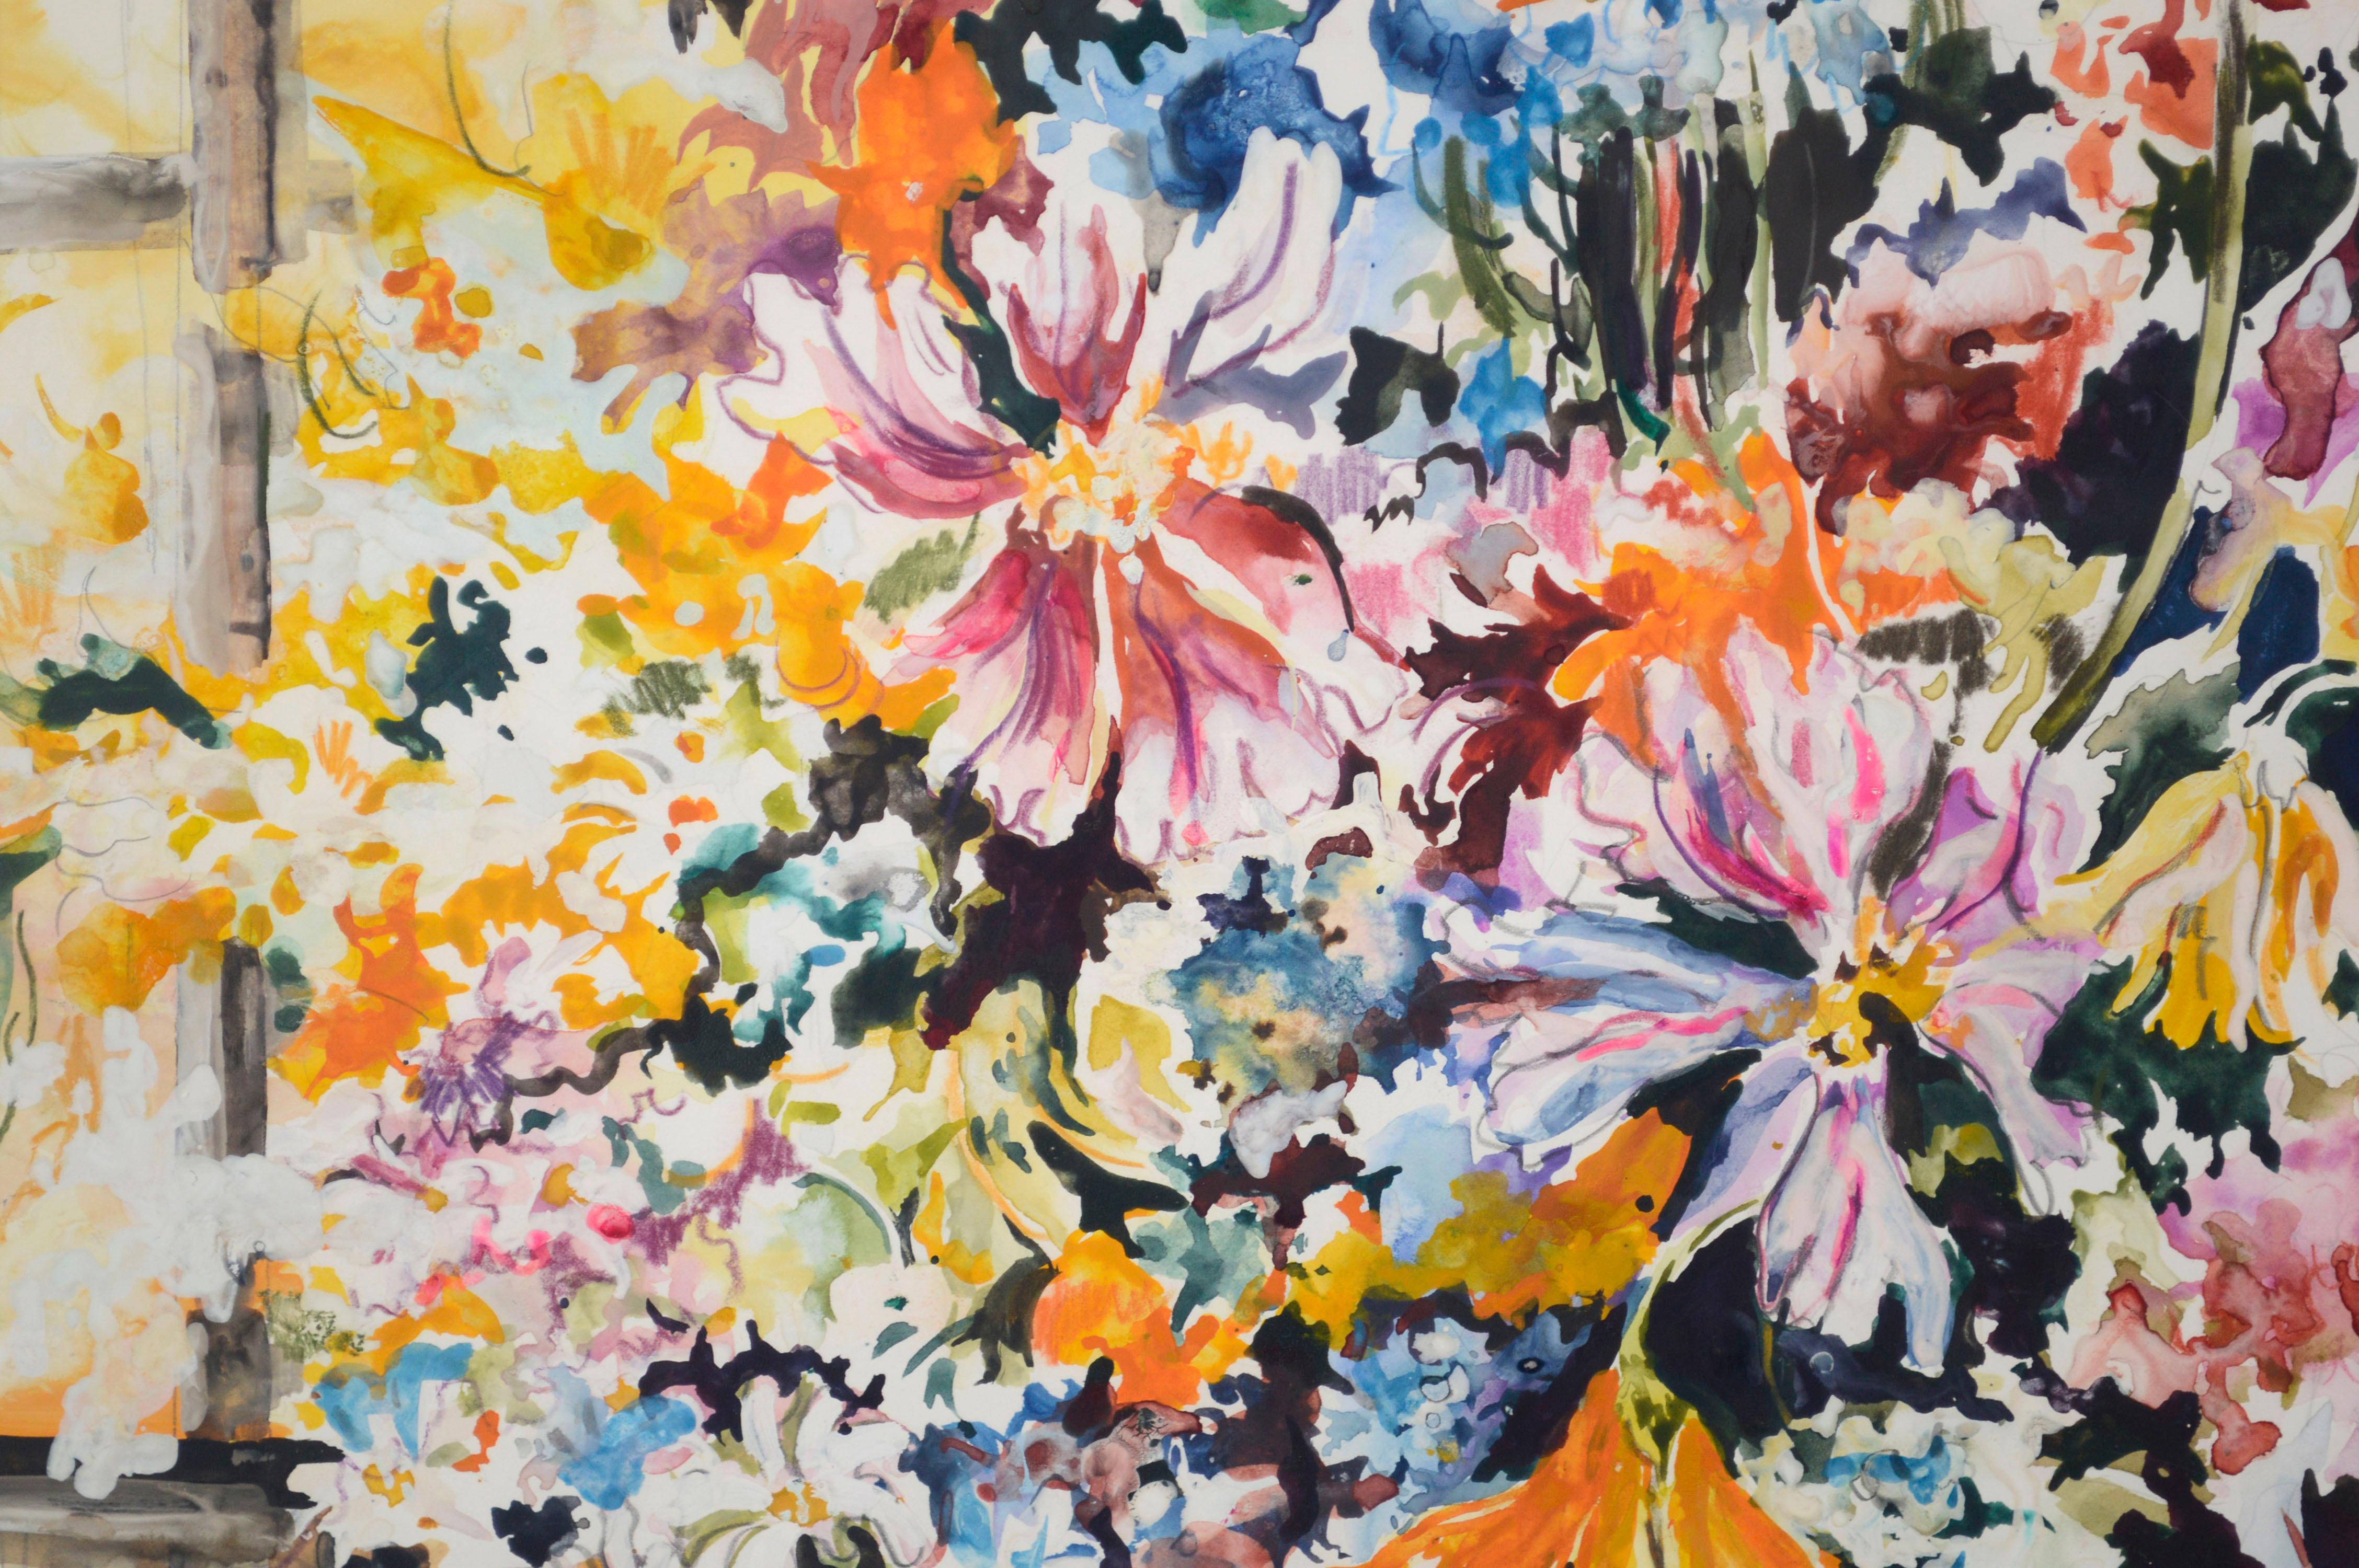 Farbenfrohe Blumen stehen im Vordergrund dieses großformatigen Aquarells eines blühenden Frühlingsstraußes des kalifornischen Künstlers Royce Thyberg Gordon (Amerikaner, 1938-2021). Signiert 